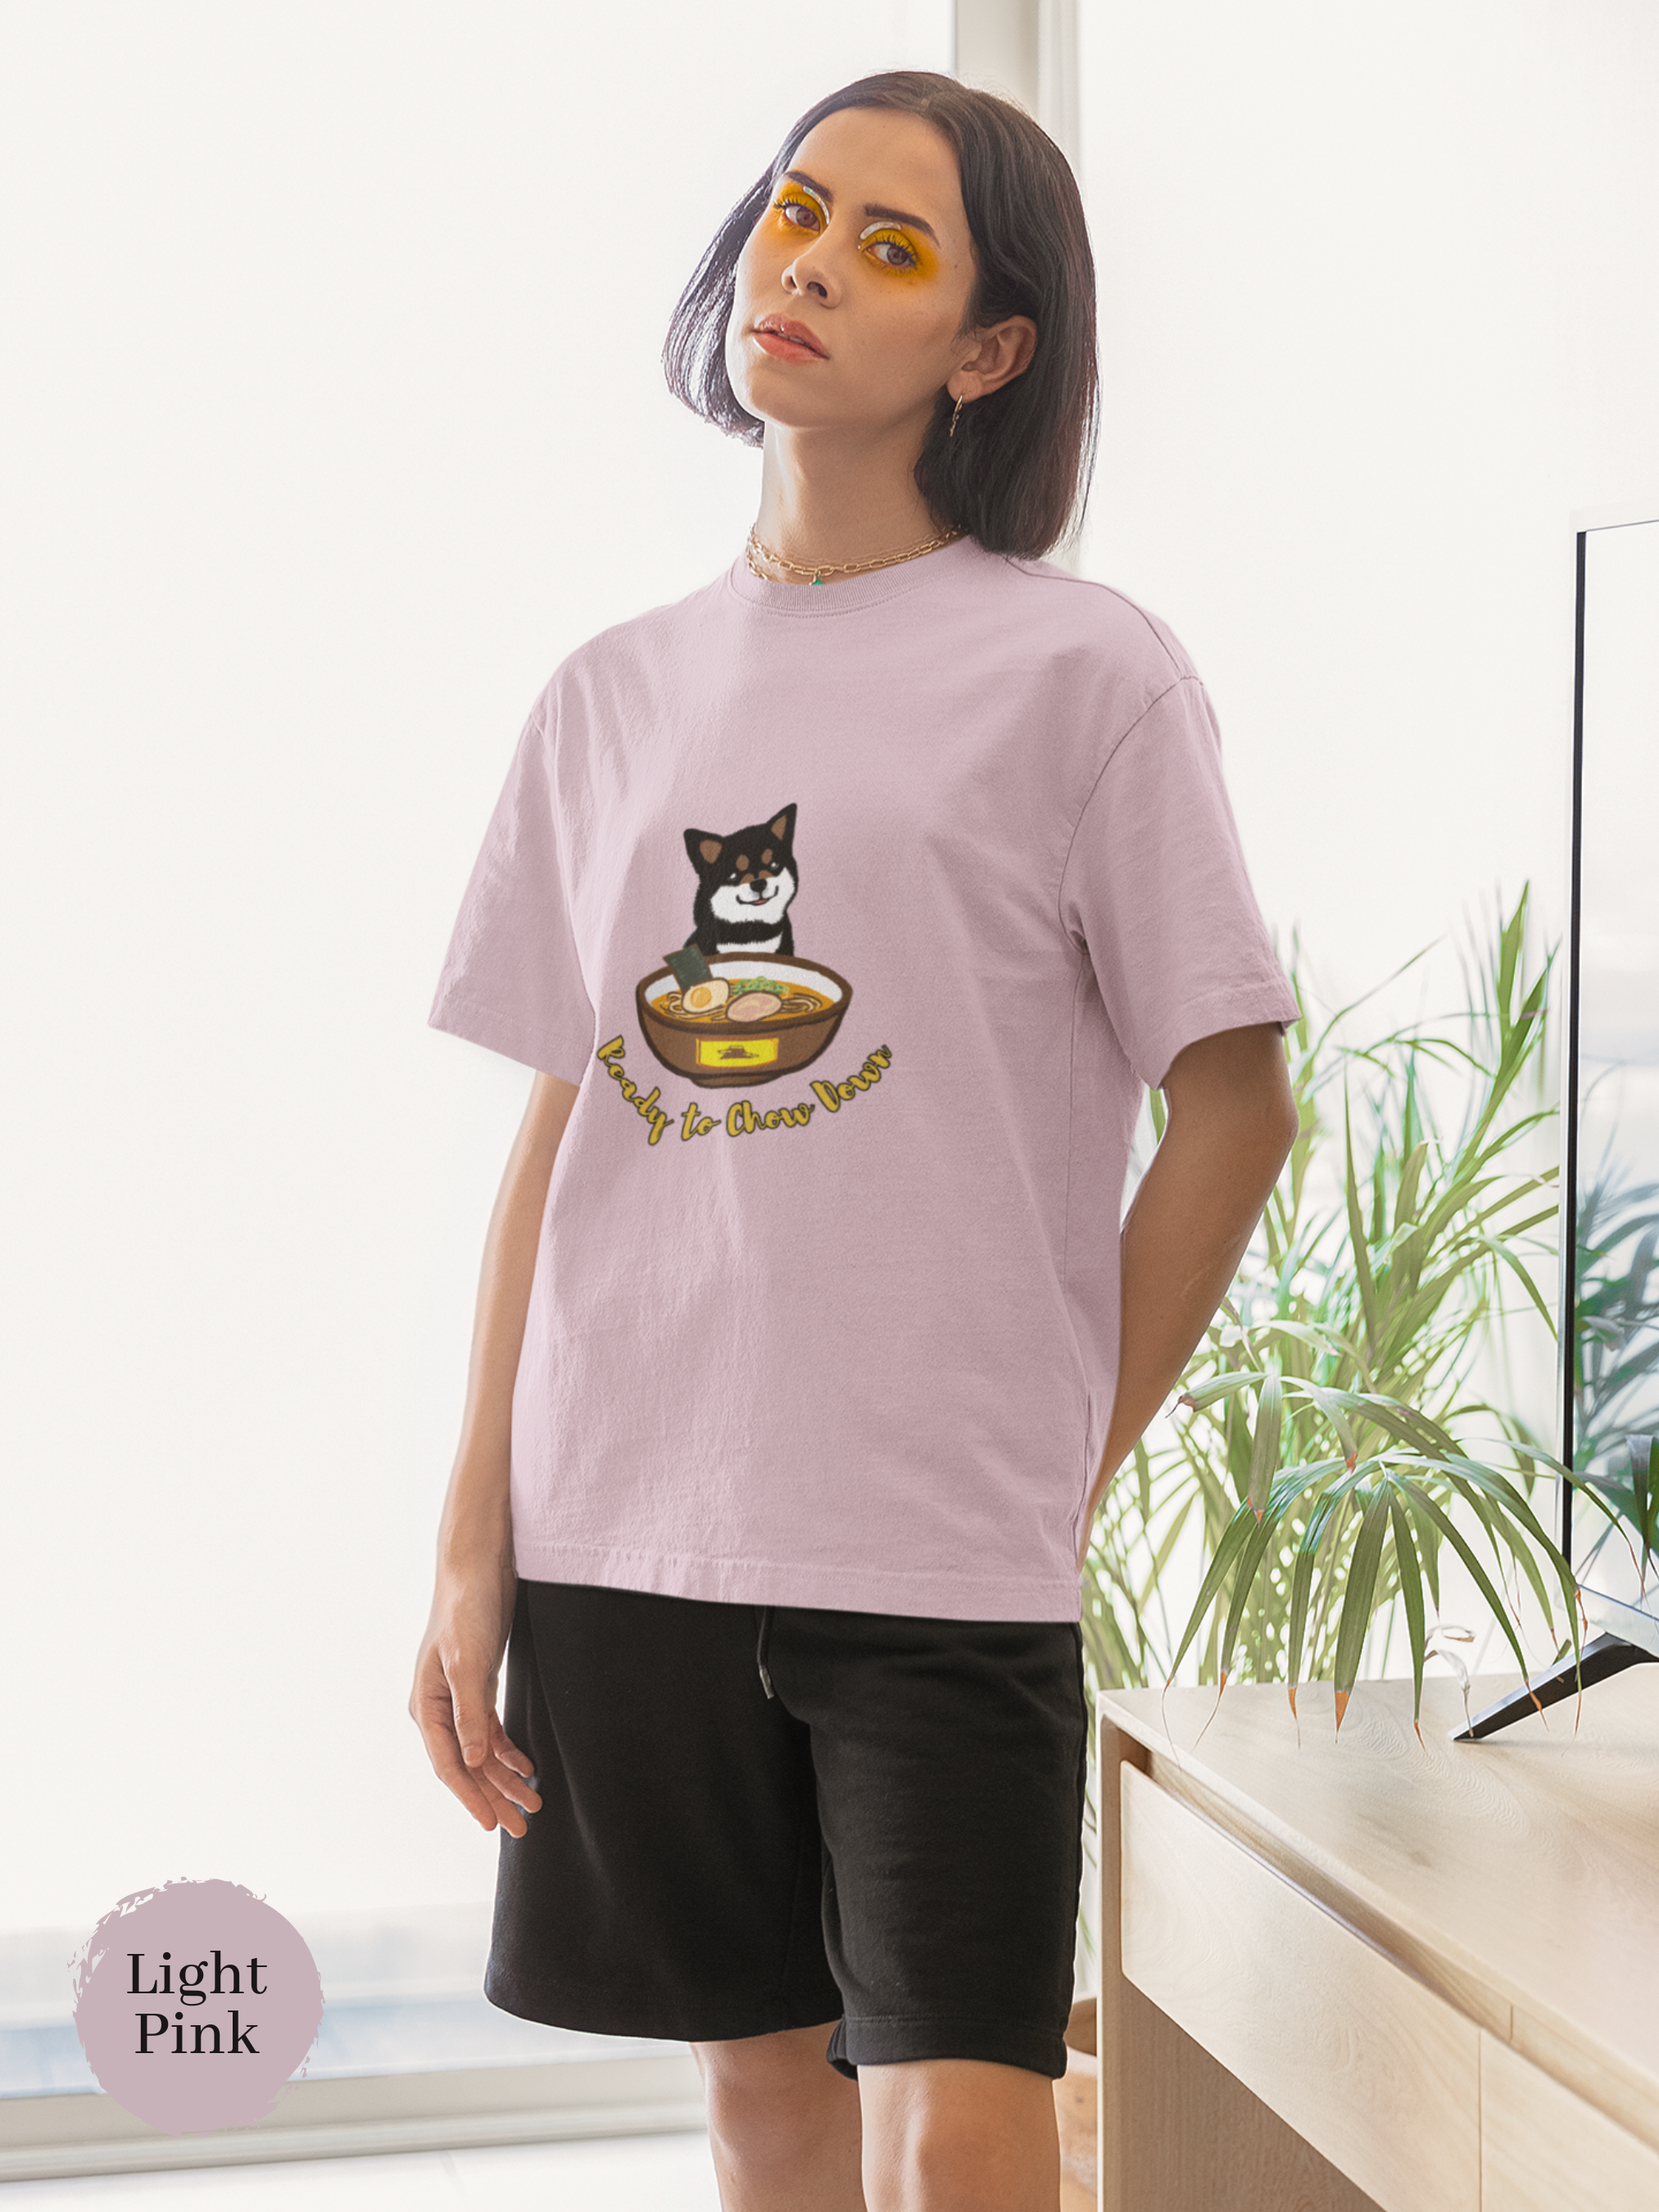 Ramen T-shirt: Ready to Chow Down - Shiba Inu and Ramen Art for Japanese Foodie Shirt